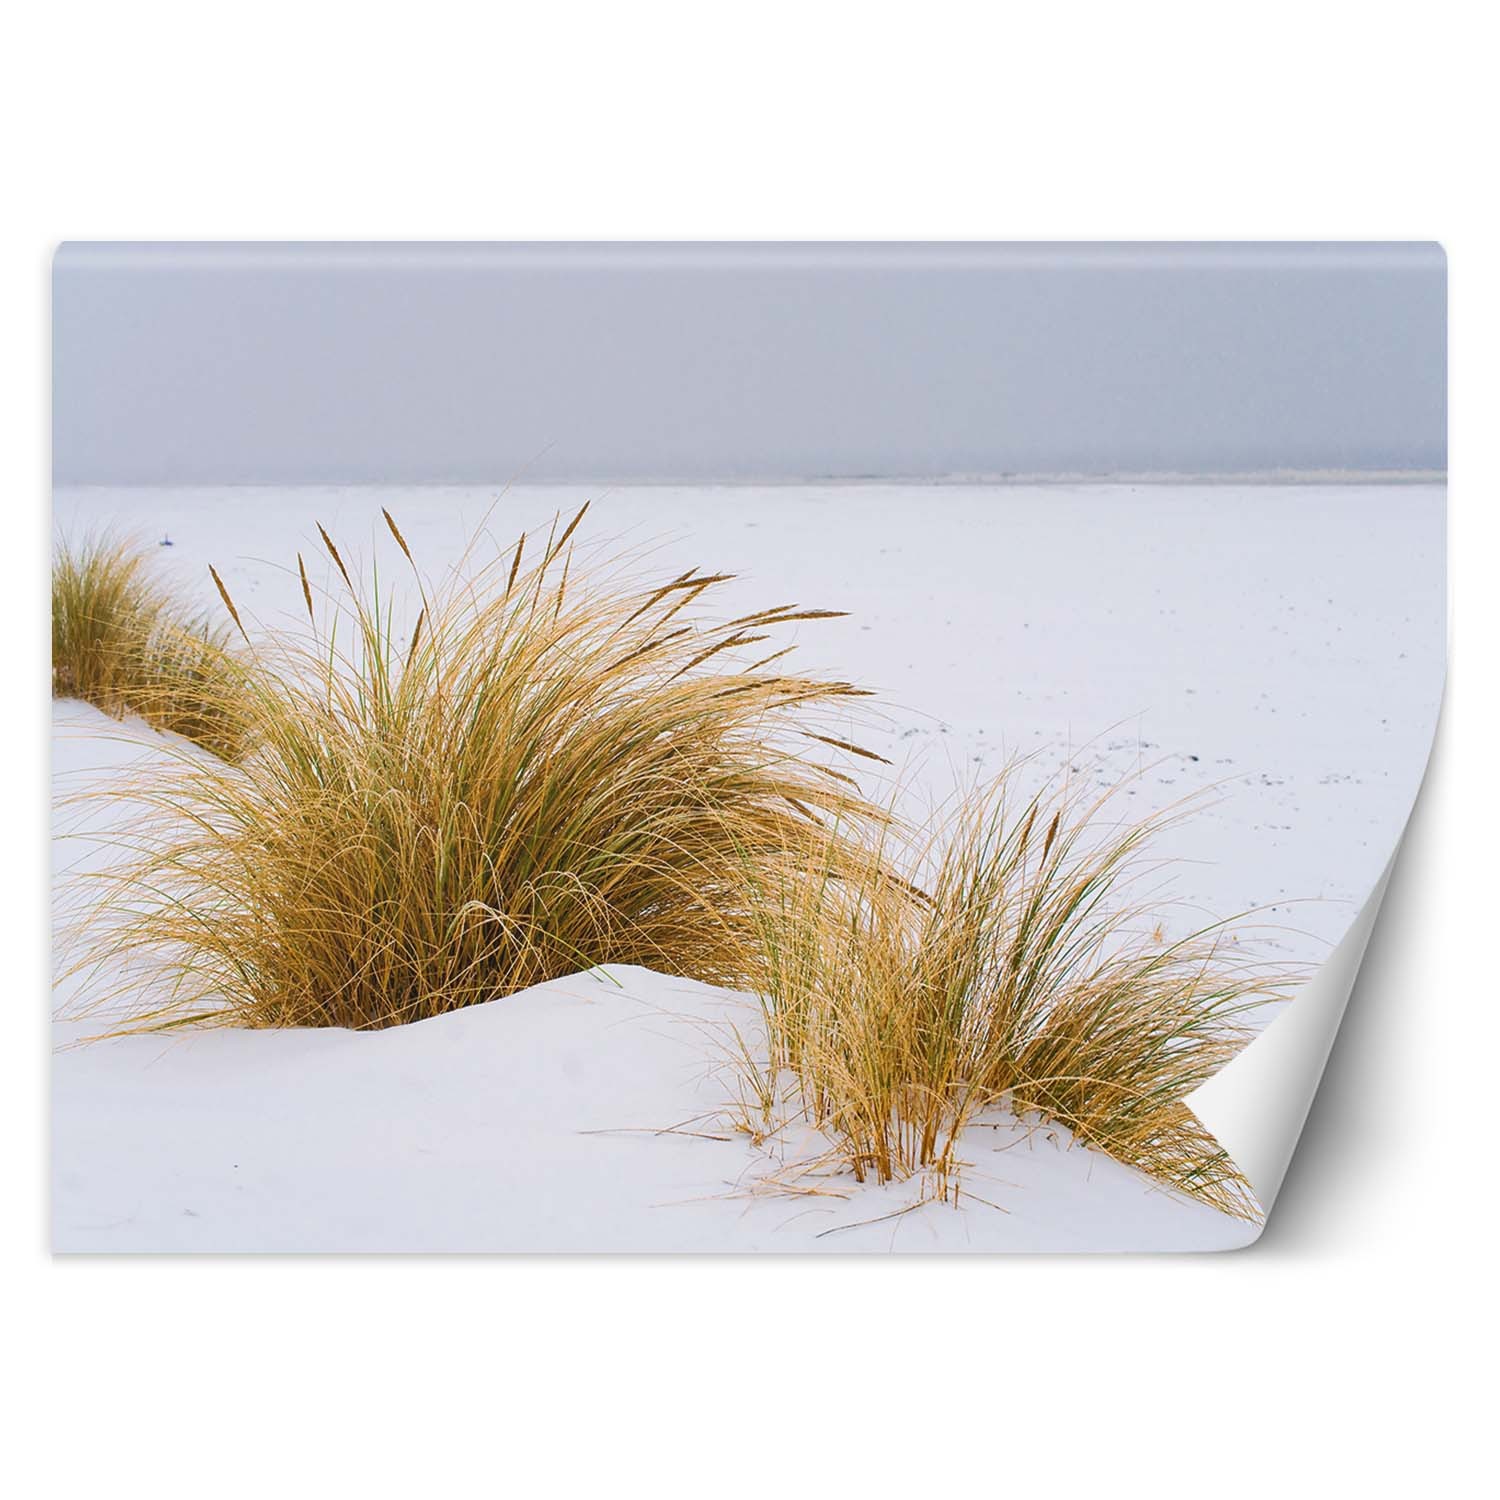 Trend24 – Behang – Duinen Op Gouden Zand – Behangpapier – Fotobehang Natuur – Behang Woonkamer – 400x280x2 cm – Incl. behanglijm